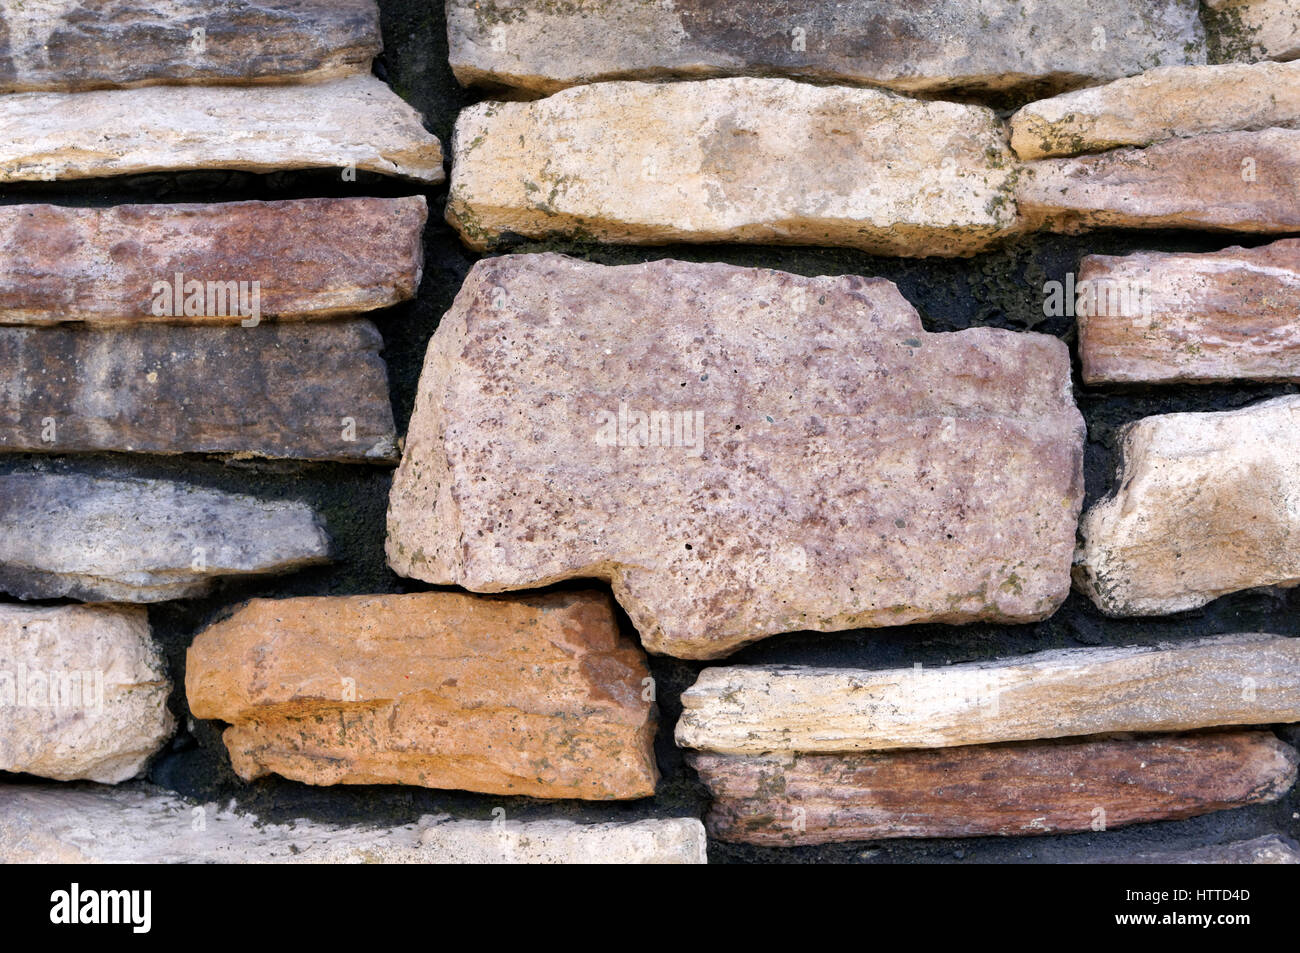 Mehrfarbige gestapelt Dry stone wall mit Intarsien mit flachen Natursteinen Stockfoto